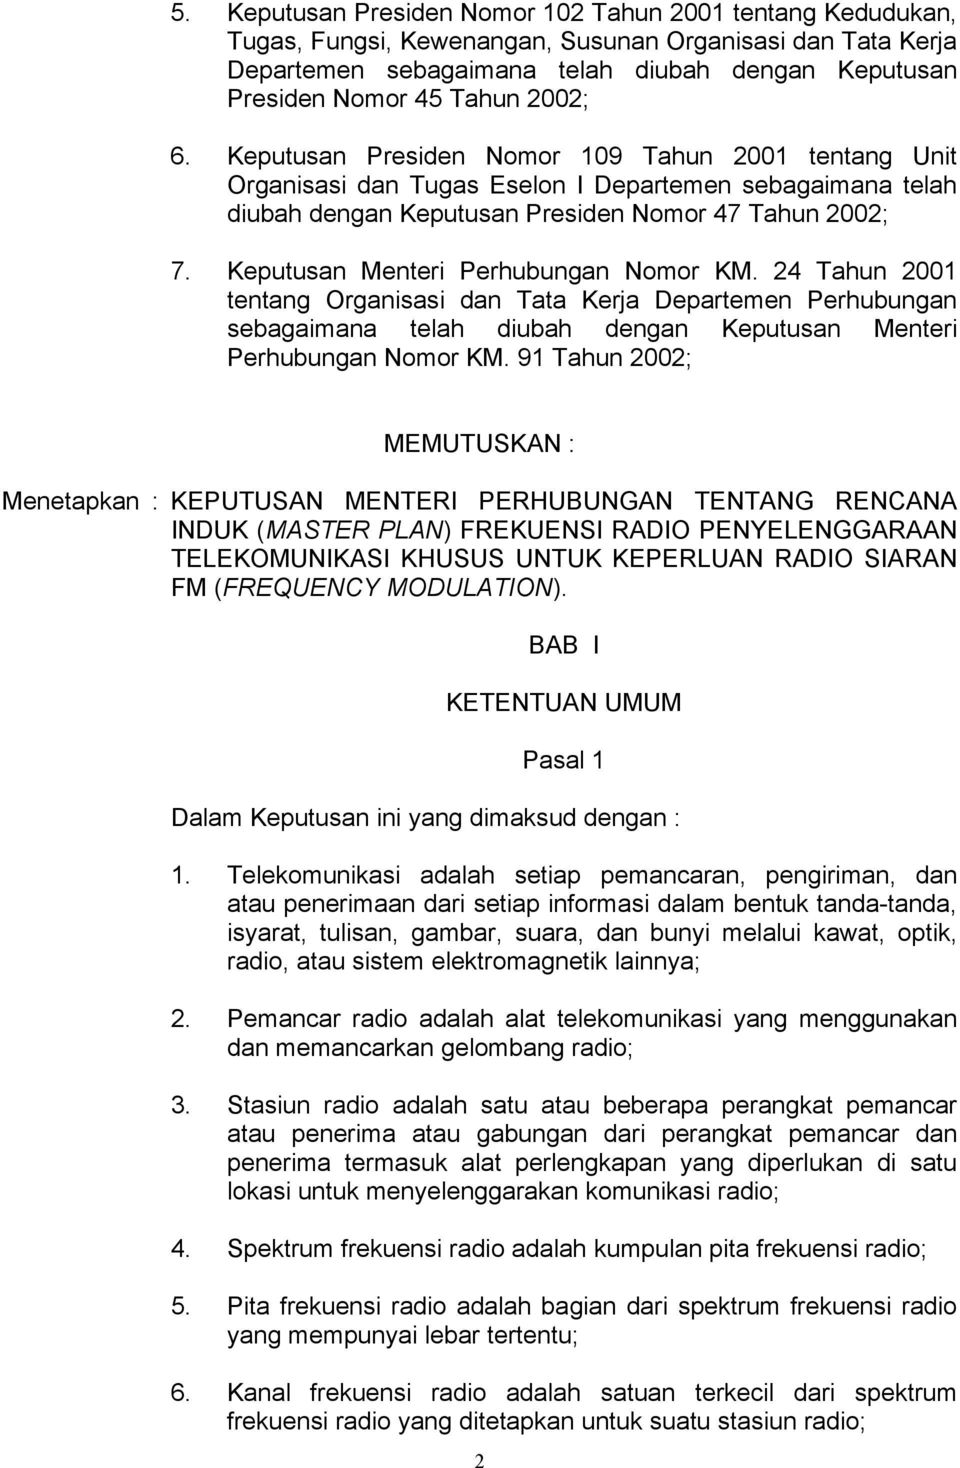 Keputusan Menteri Perhubungan Nomor KM. 24 Tahun 2001 tentang Organisasi dan Tata Kerja Departemen Perhubungan sebagaimana telah diubah dengan Keputusan Menteri Perhubungan Nomor KM.